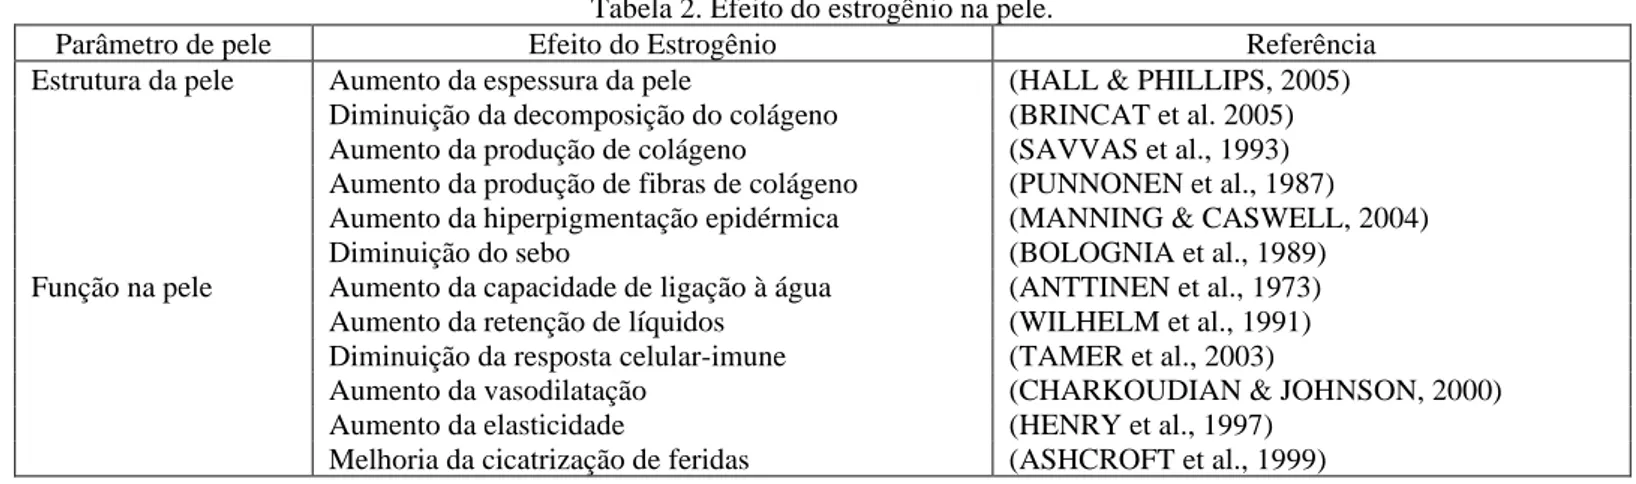 Tabela 2. Efeito do estrogênio na pele. 